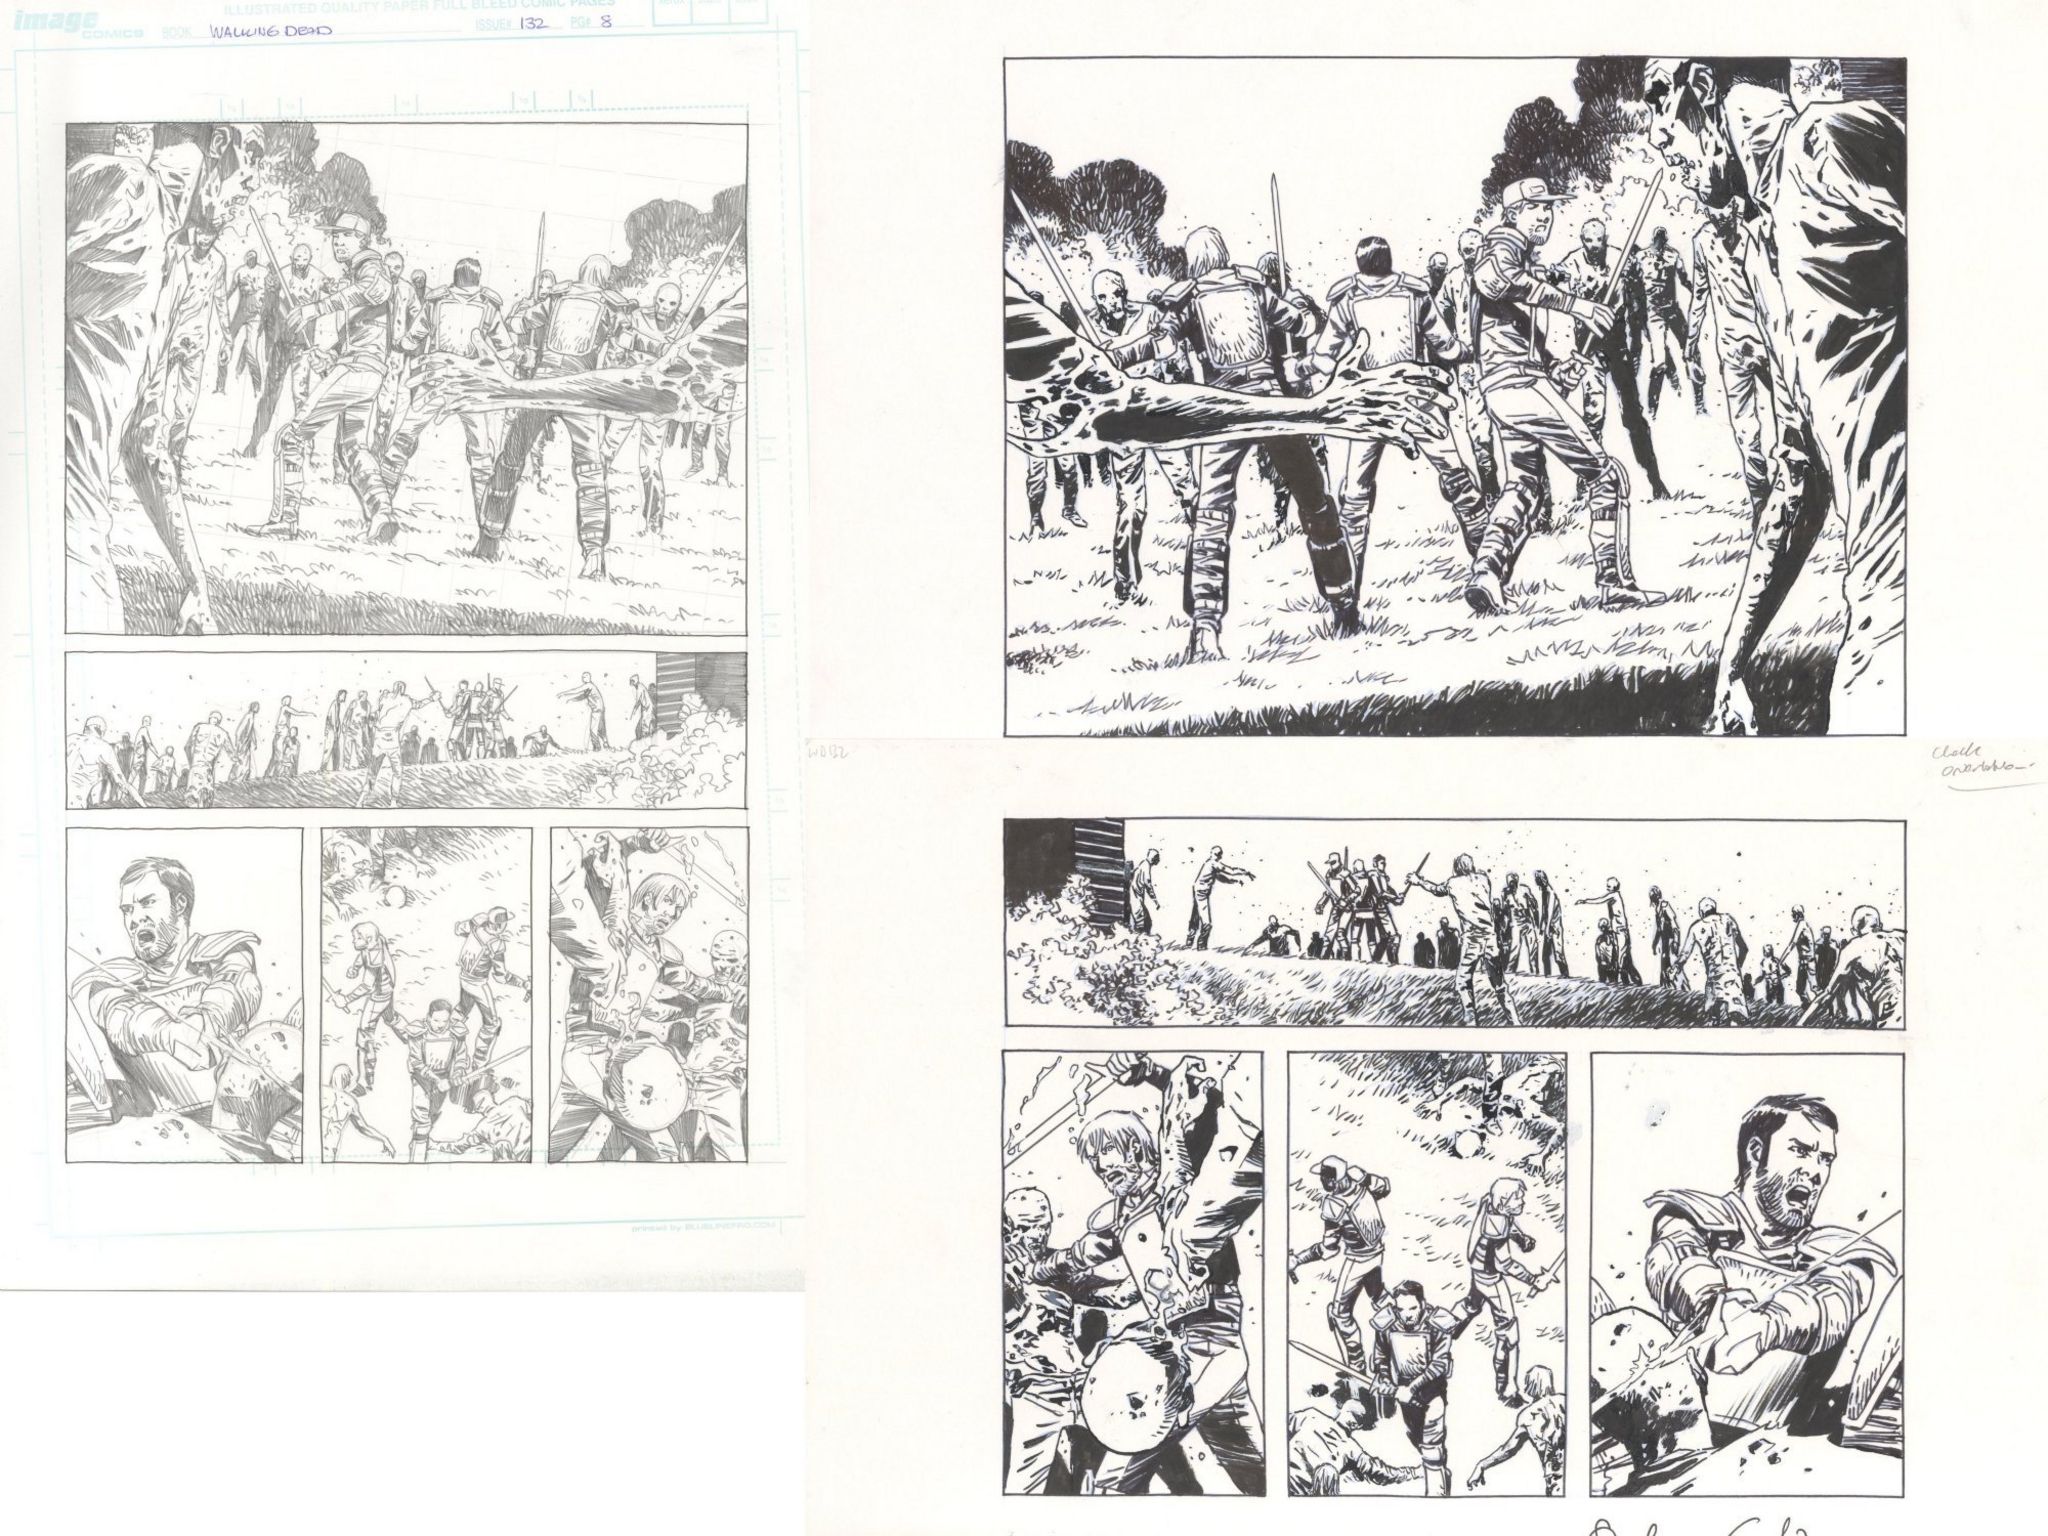 Original drawings by Charlie Adlard for Walking Dead comic